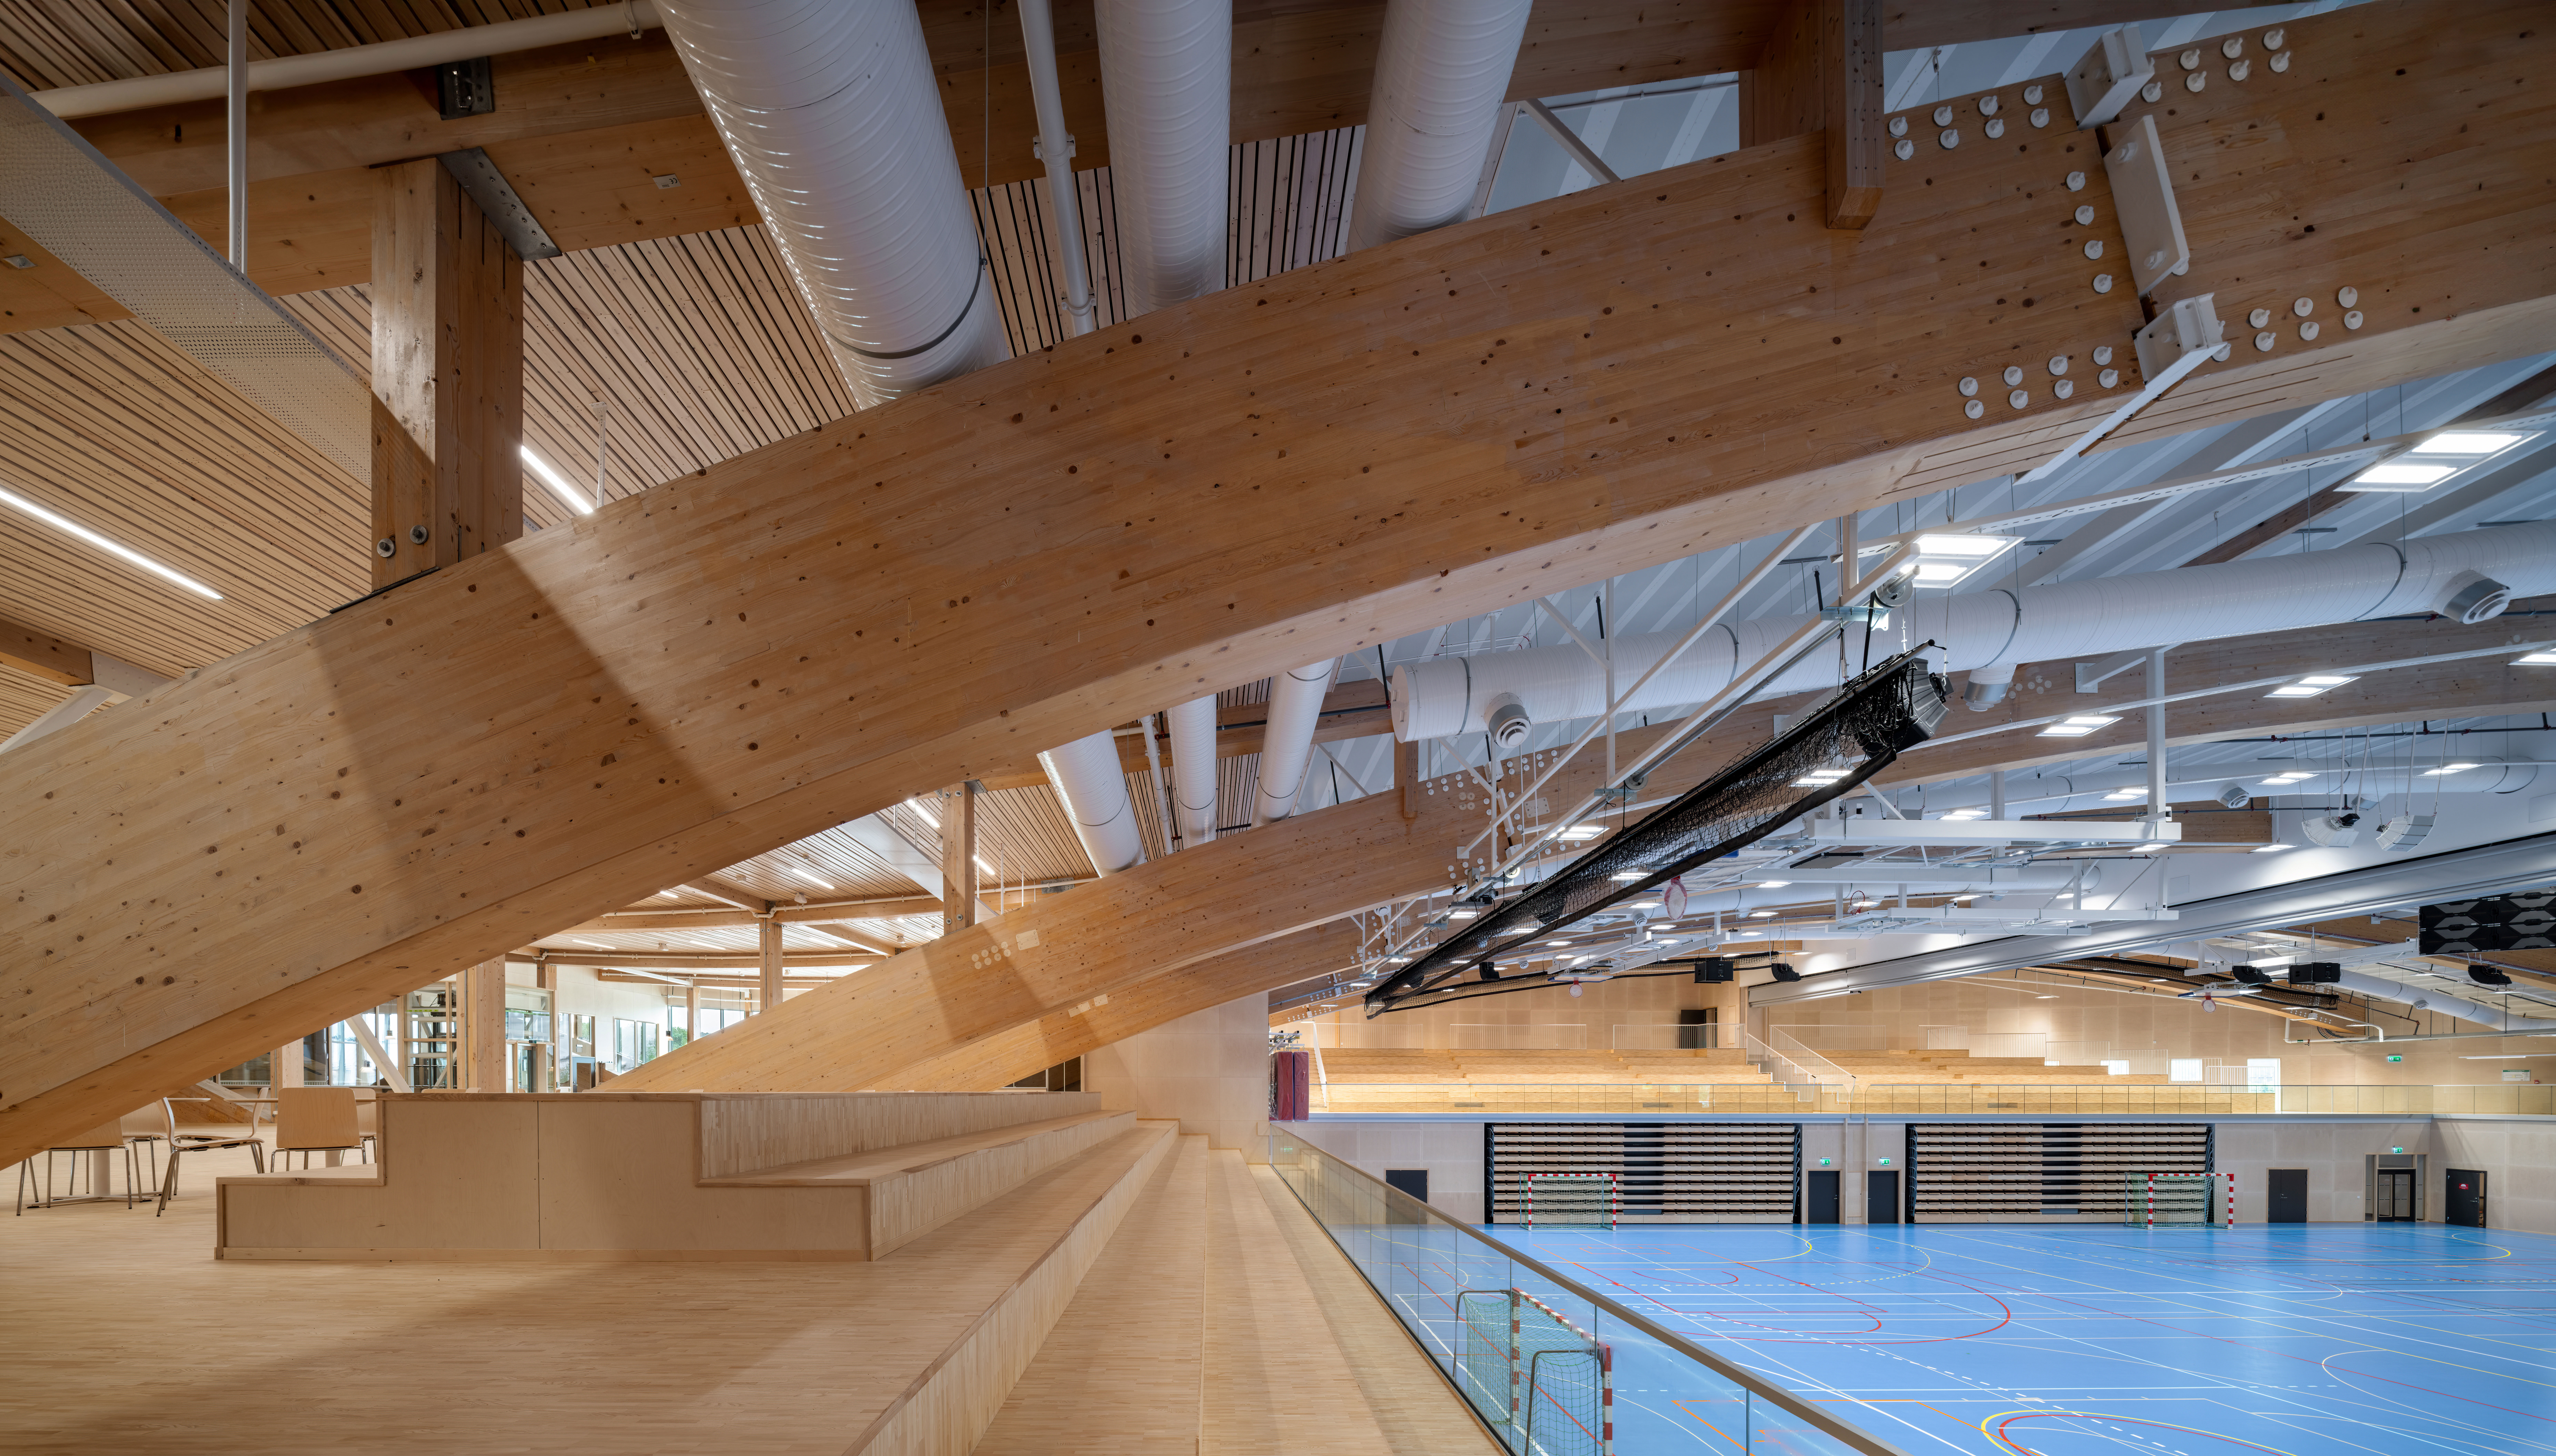 Kviberg Eis- und Sporthalle, Innenausbau in Holz